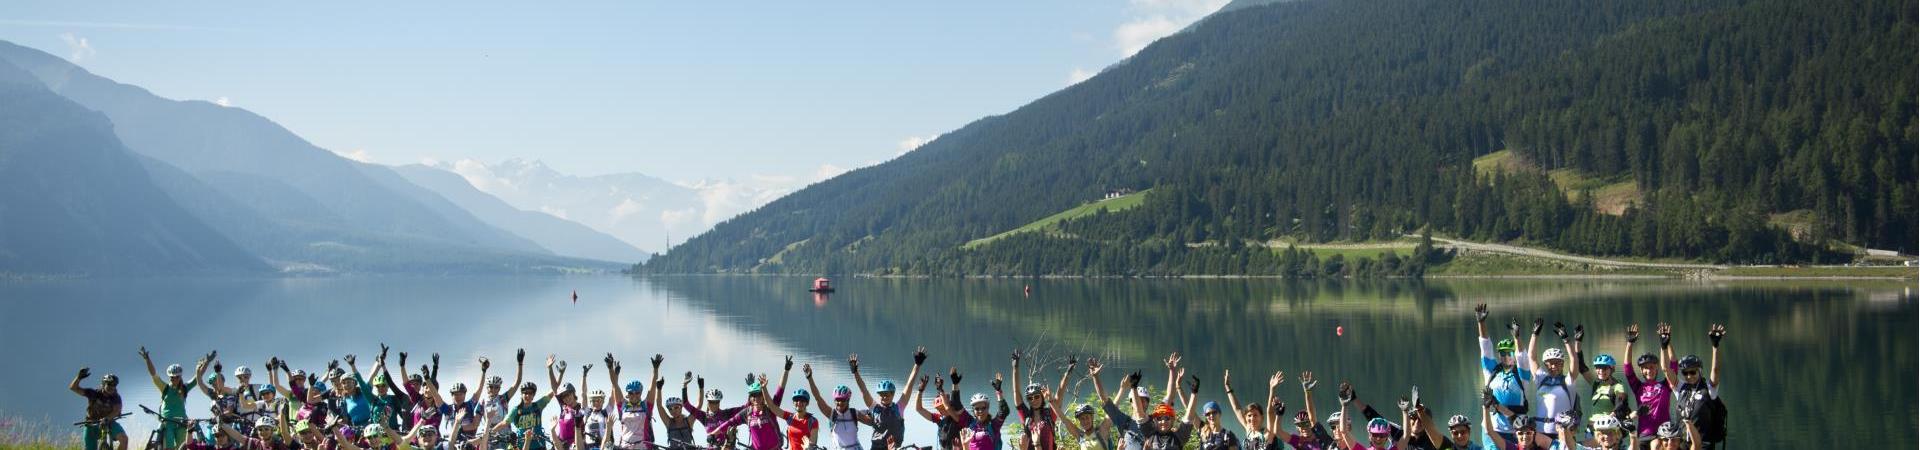 mountainbiken-womens-bike-camp-reschenpass-vinschgau-ms